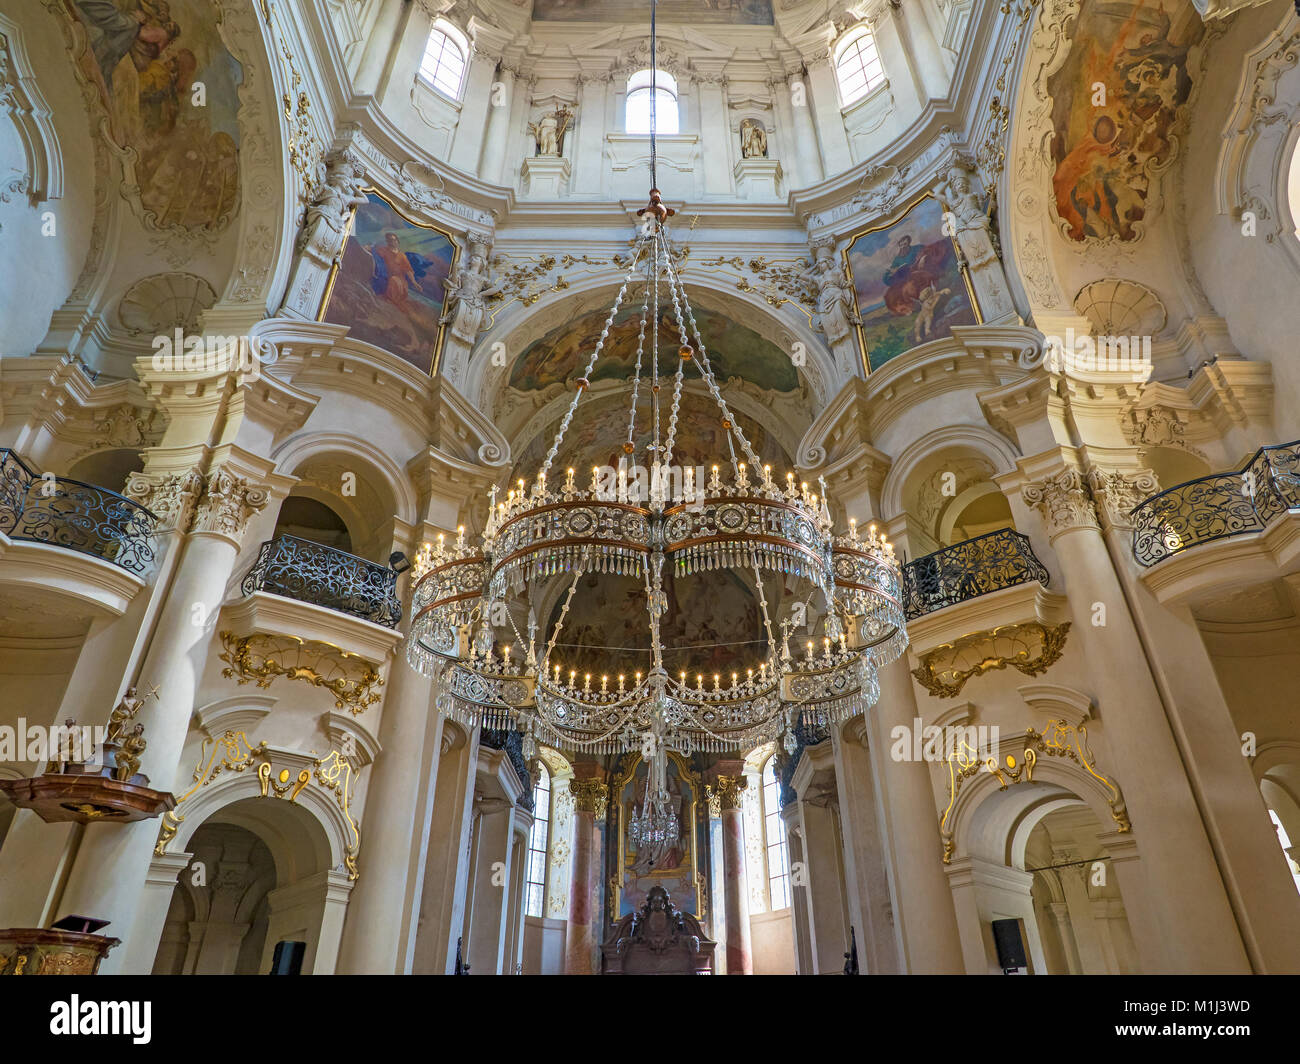 PRAGUE, RÉPUBLIQUE TCHÈQUE - 28 juillet 2016 - Des images d'intérieur et de la couronne dans le cristal lustre Baroque Cathédrale St Nicholas Old Town Prague, un po Banque D'Images